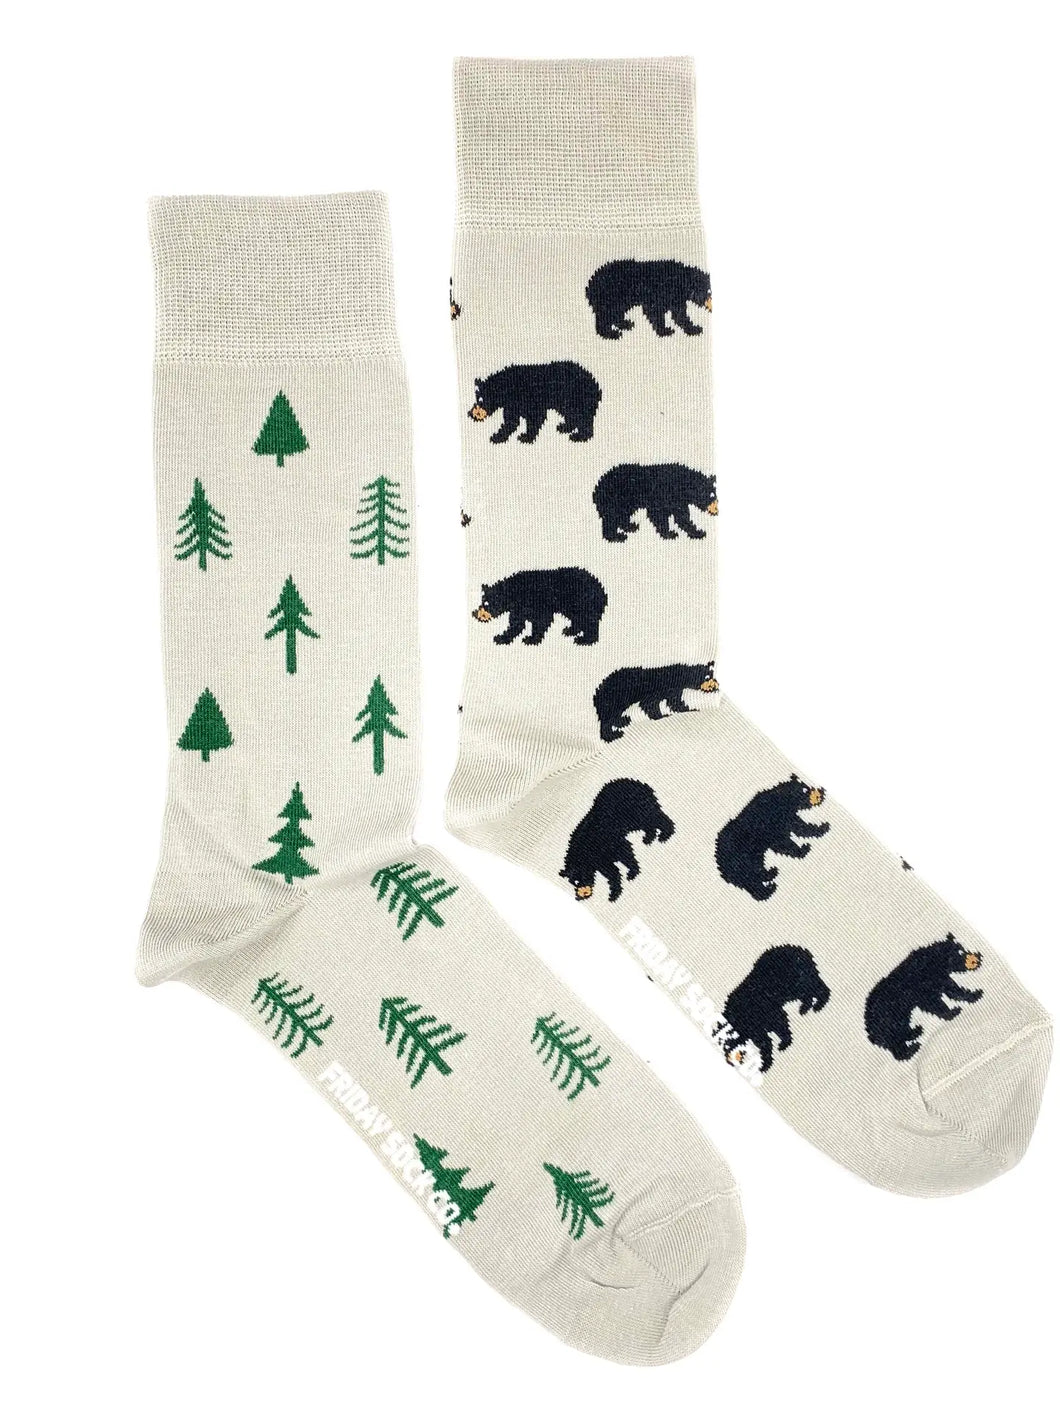 men's socks - bears & trees